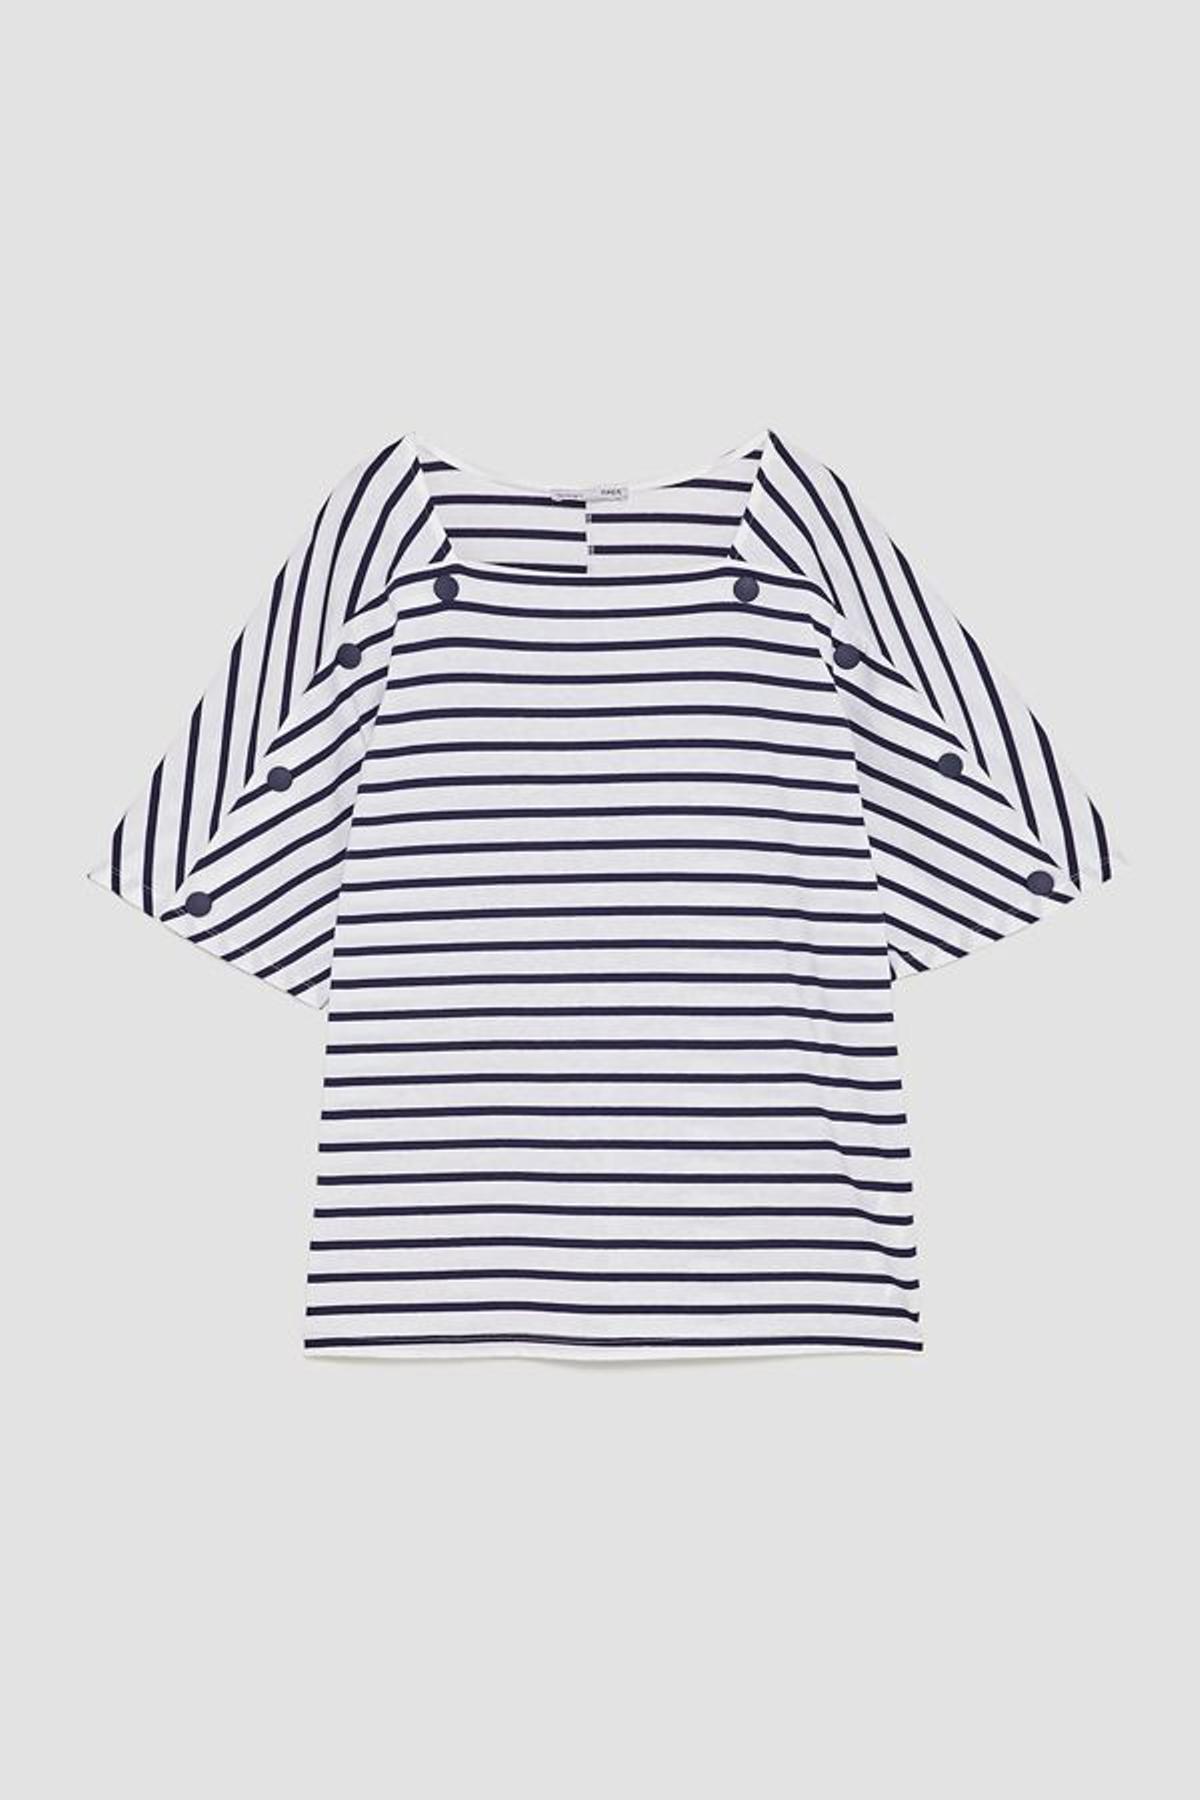 Rebajas en Zara: camiseta de rayas